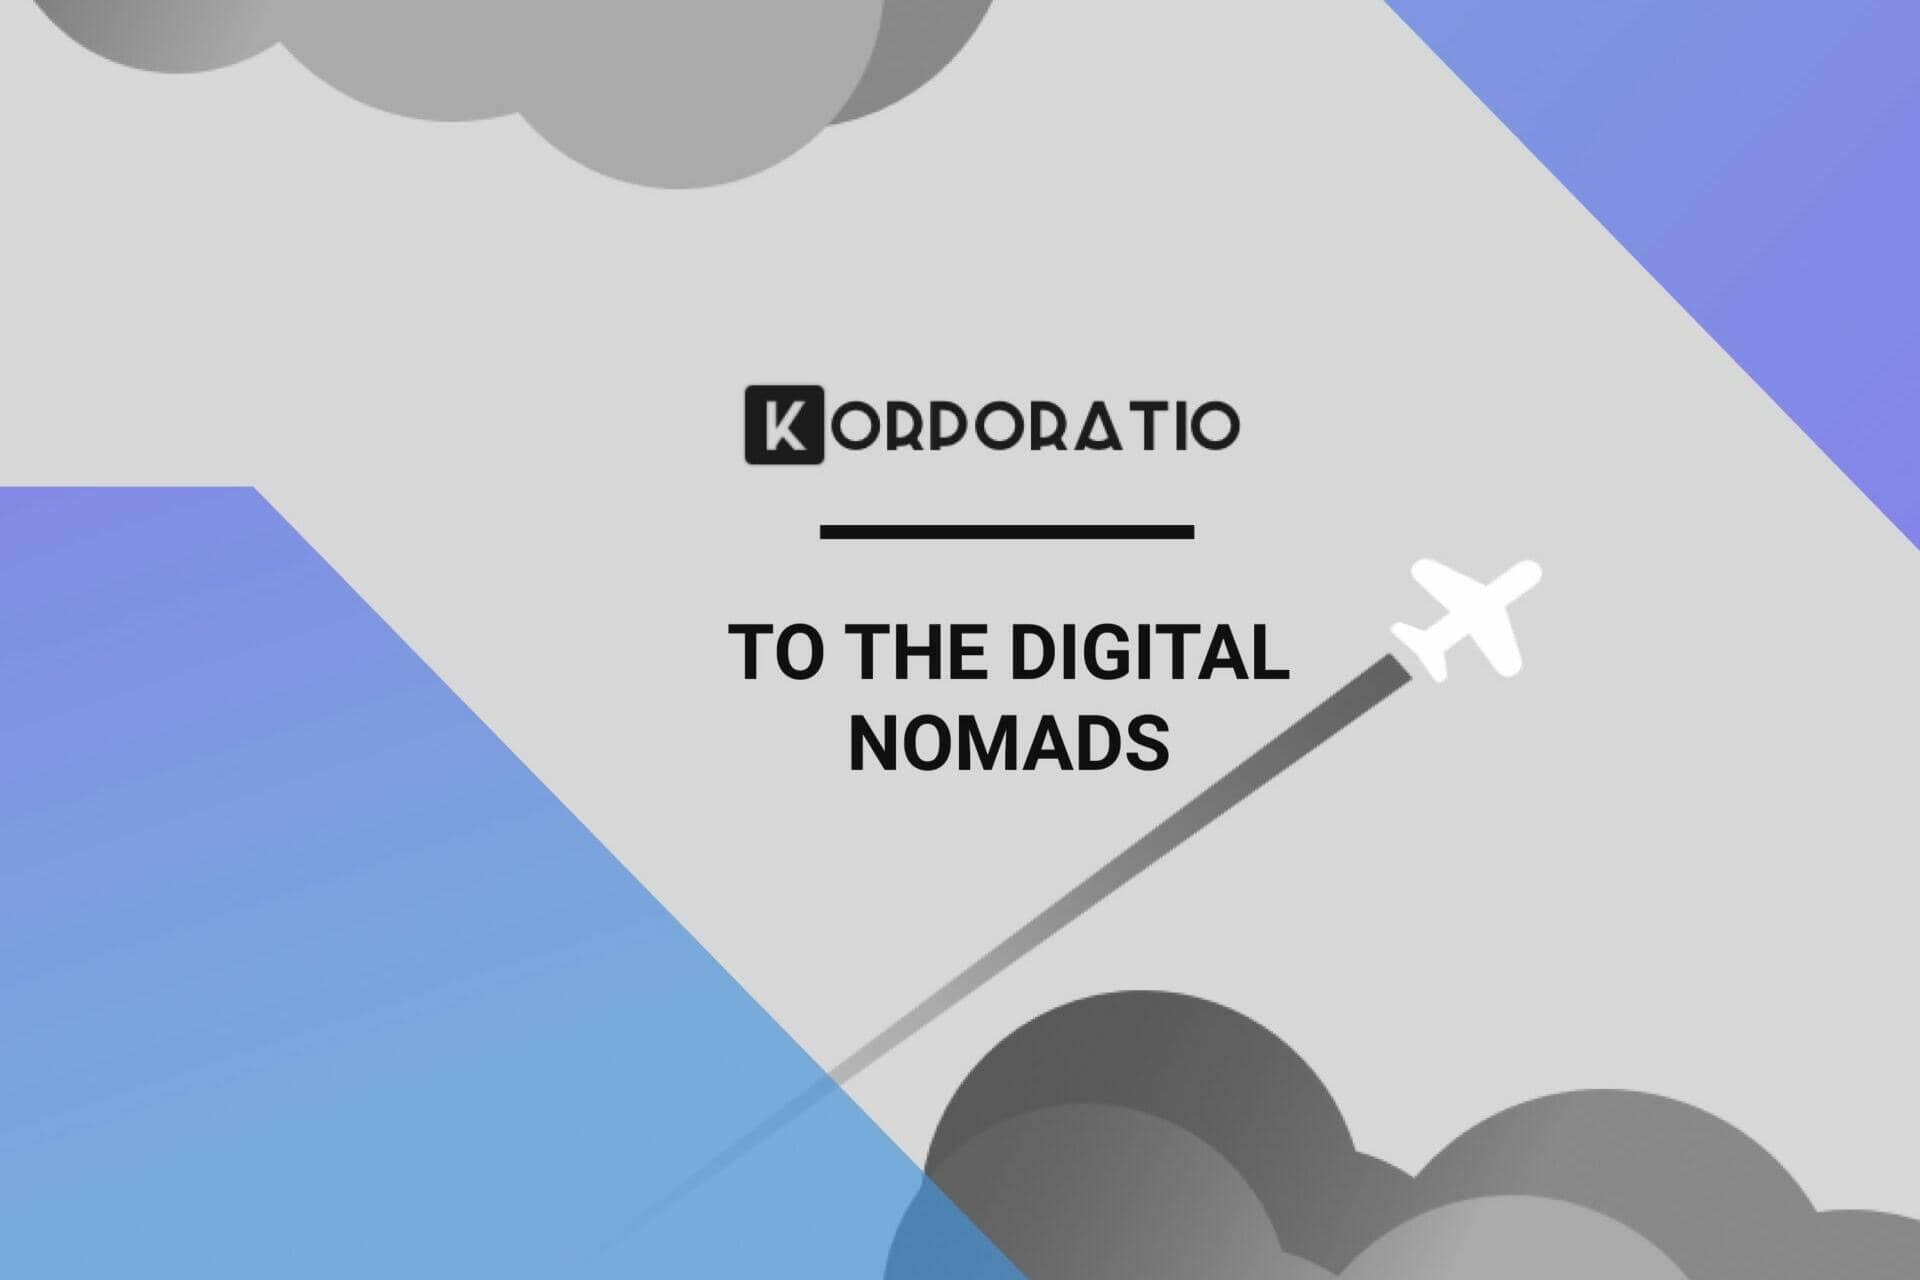 Digital nomads